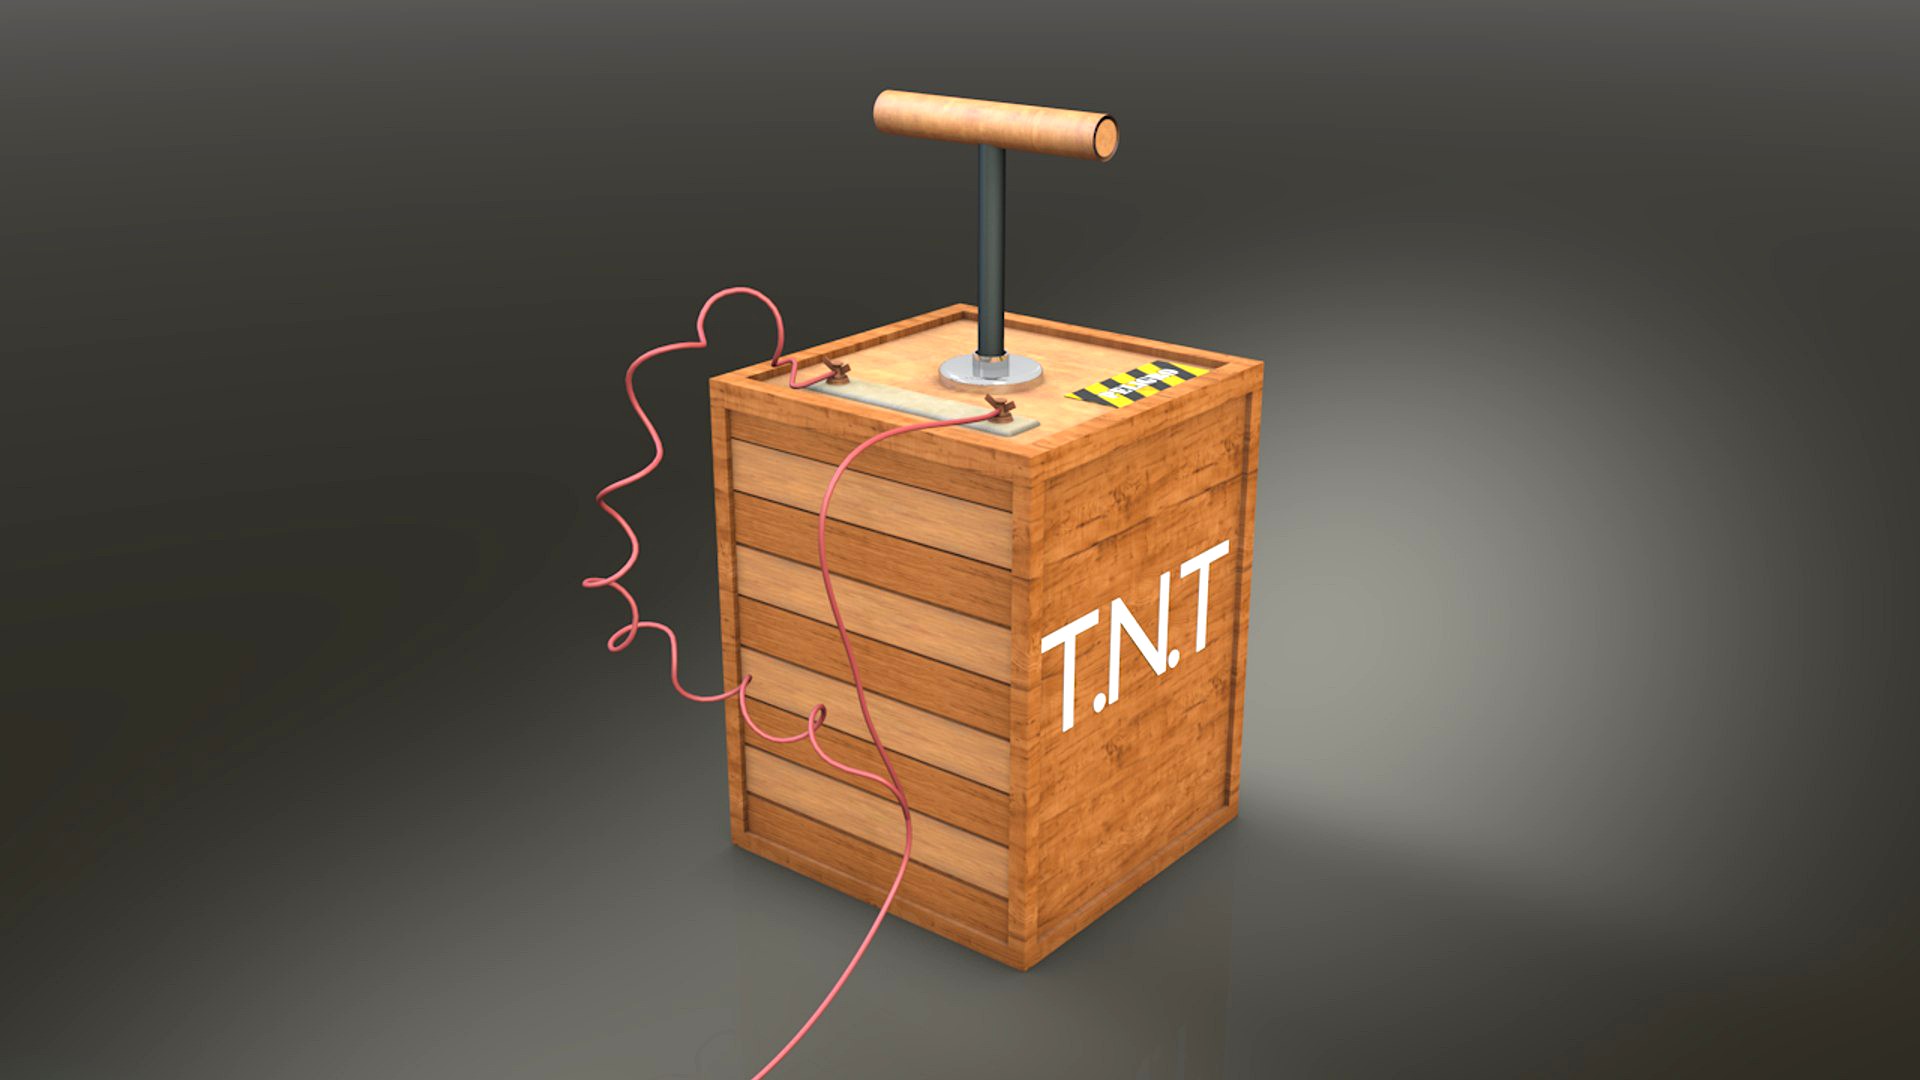 TNT Detonator